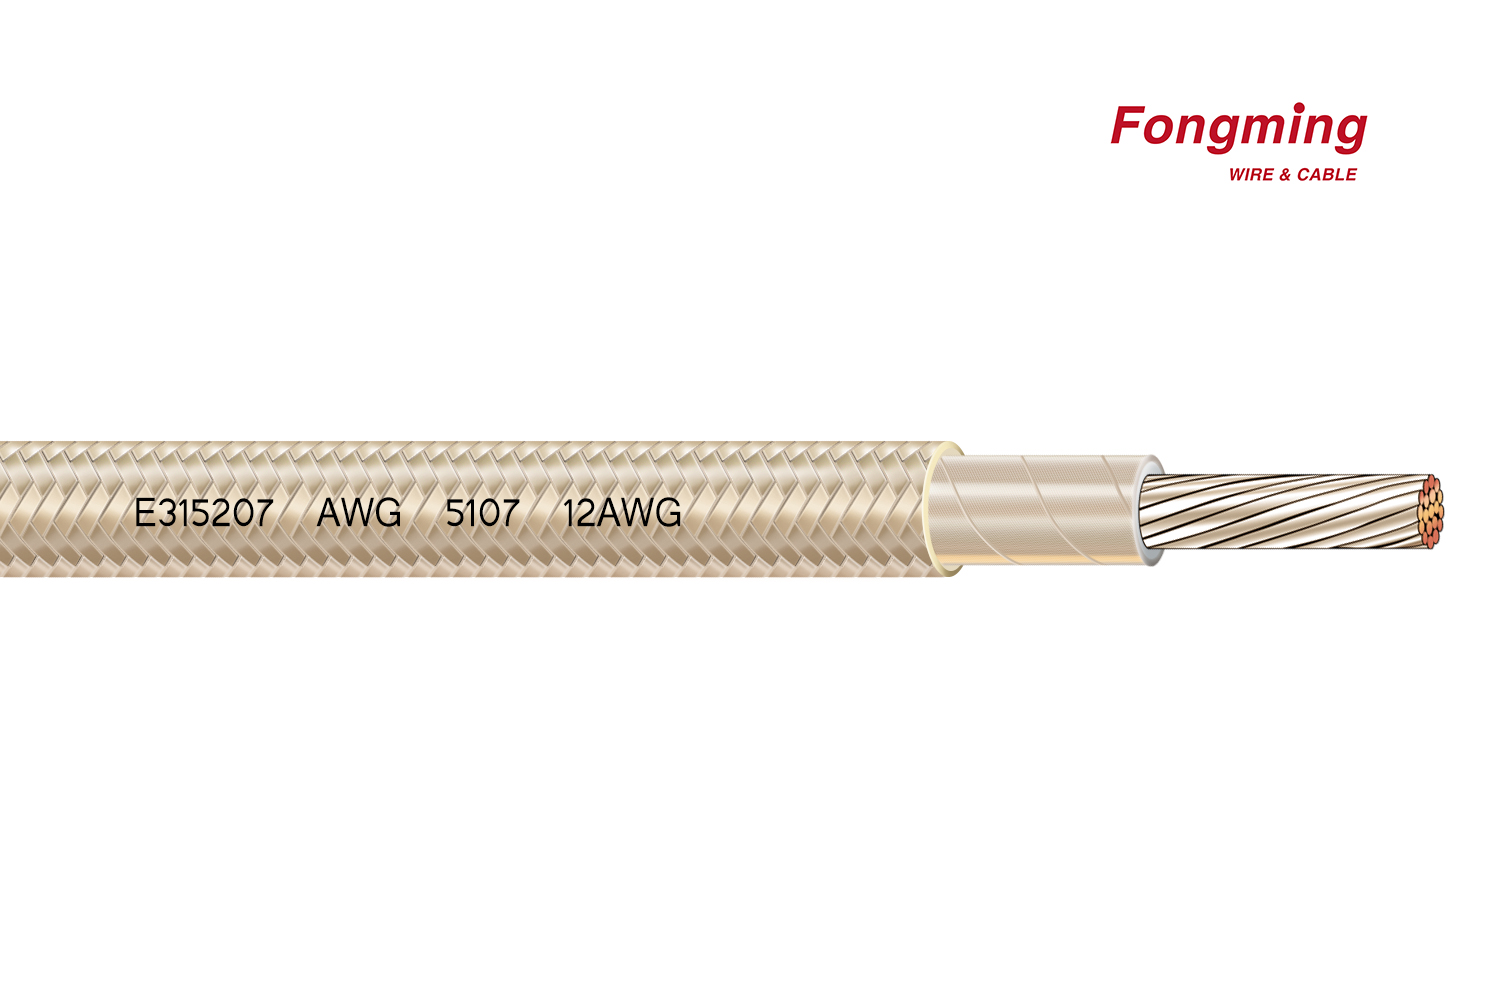 Cable de Fongming: Mica: 1 minuto para entender la tecnología del nuevo cable de alta temperatura